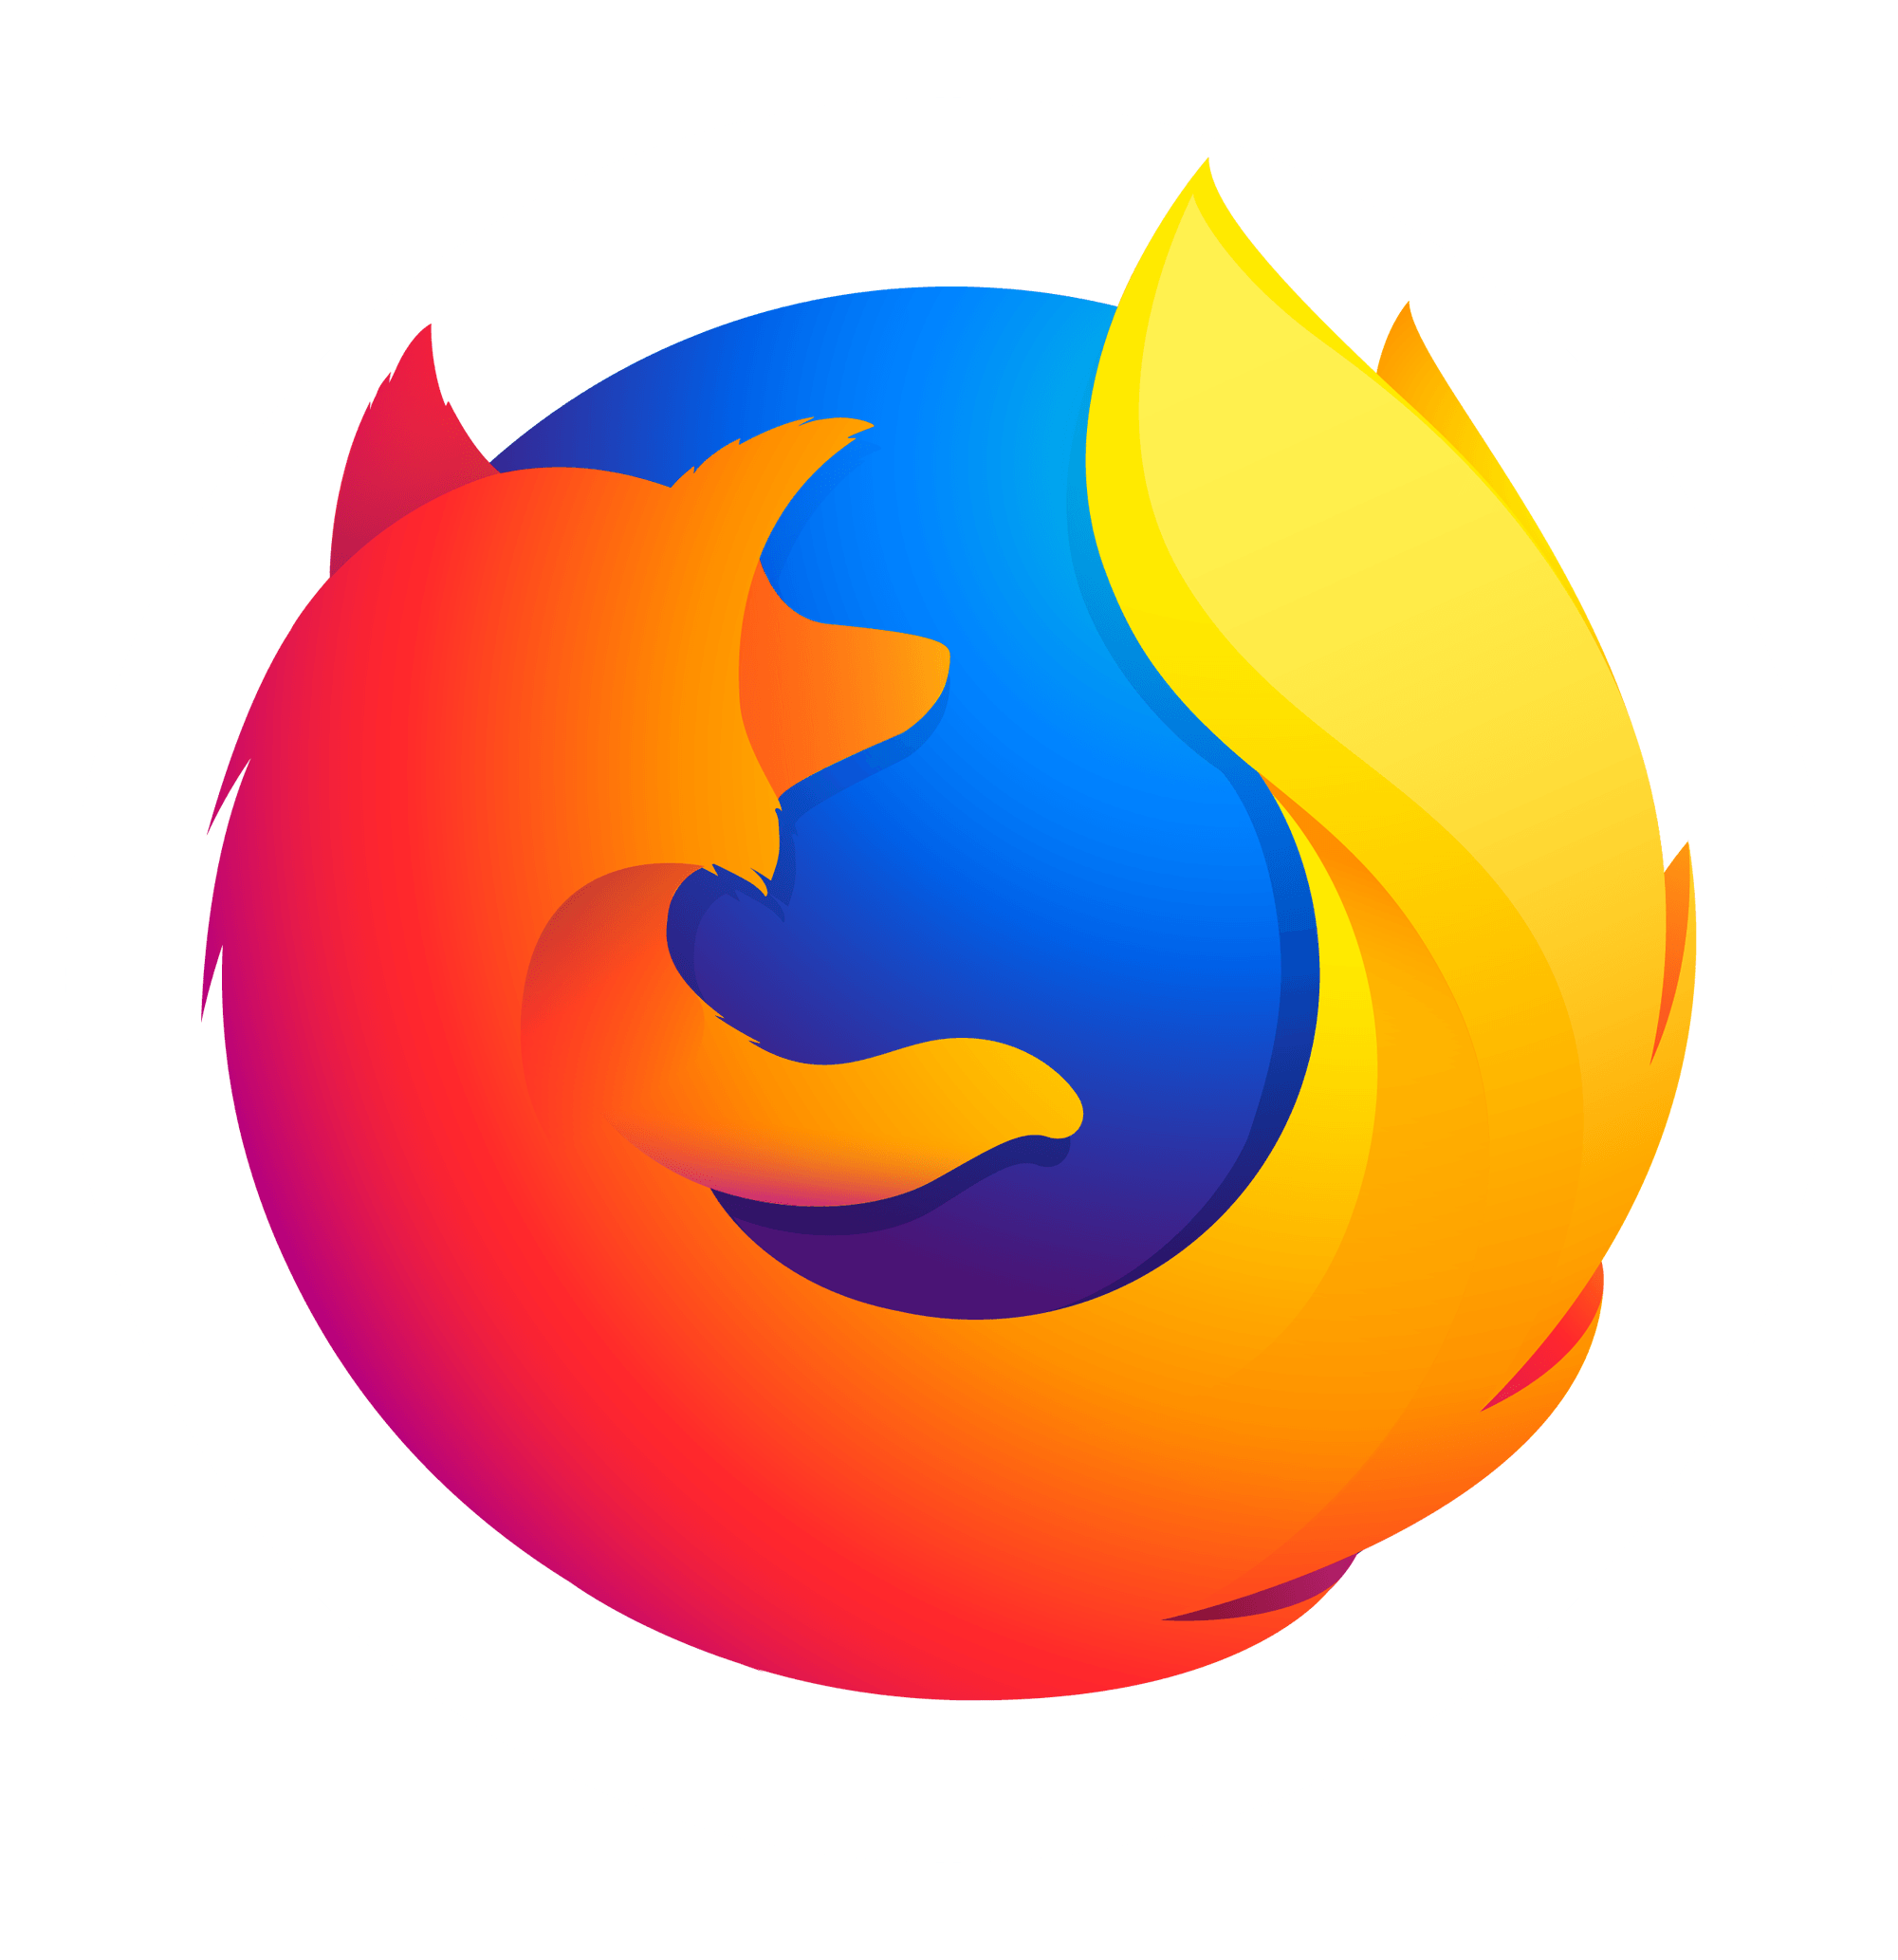 Orange and White Circle Logo - Firefox logo white circle background Free Download